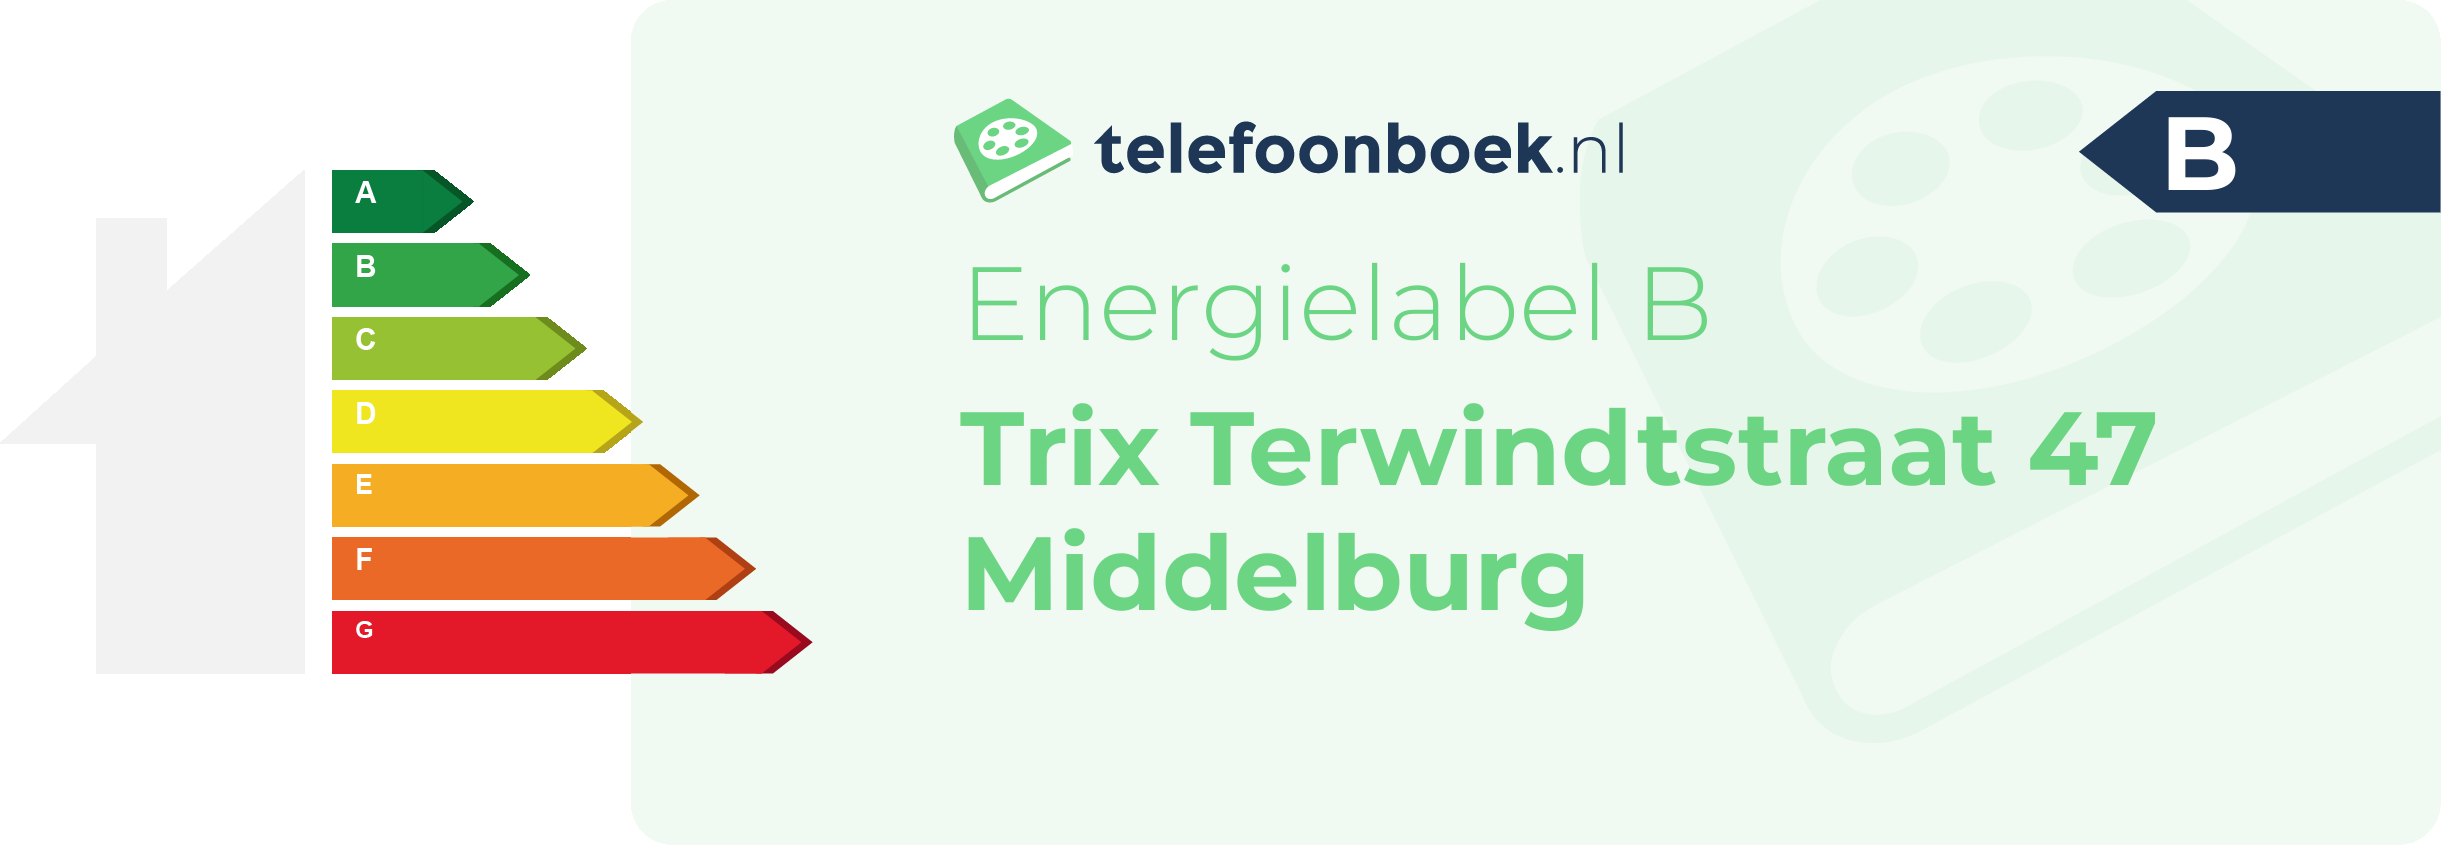 Energielabel Trix Terwindtstraat 47 Middelburg